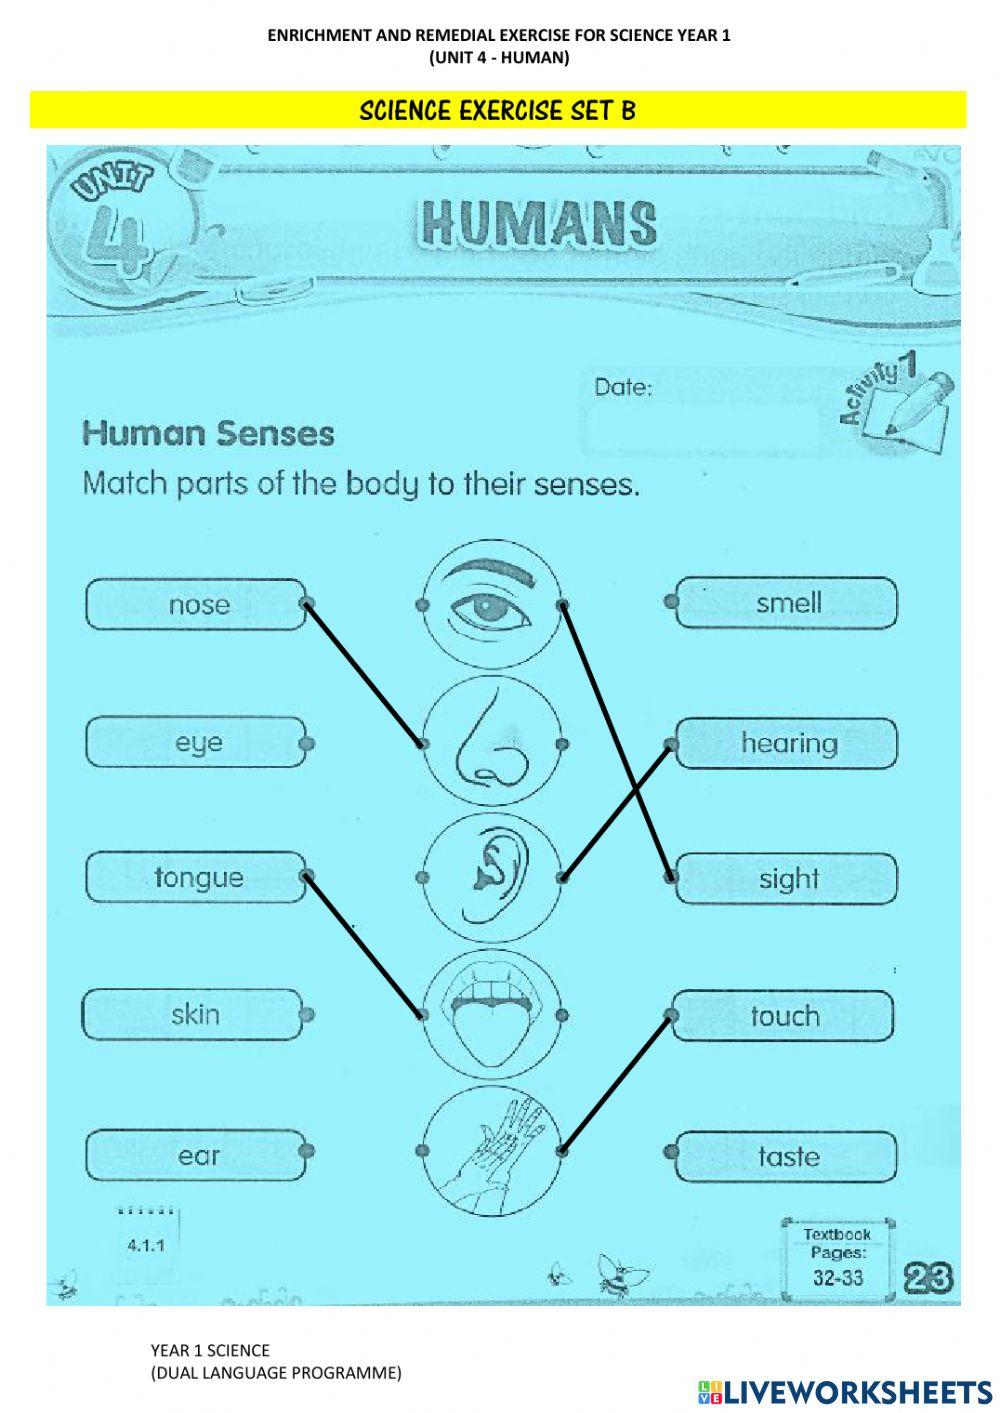 Human's Five Senses (Diagnostic Set)